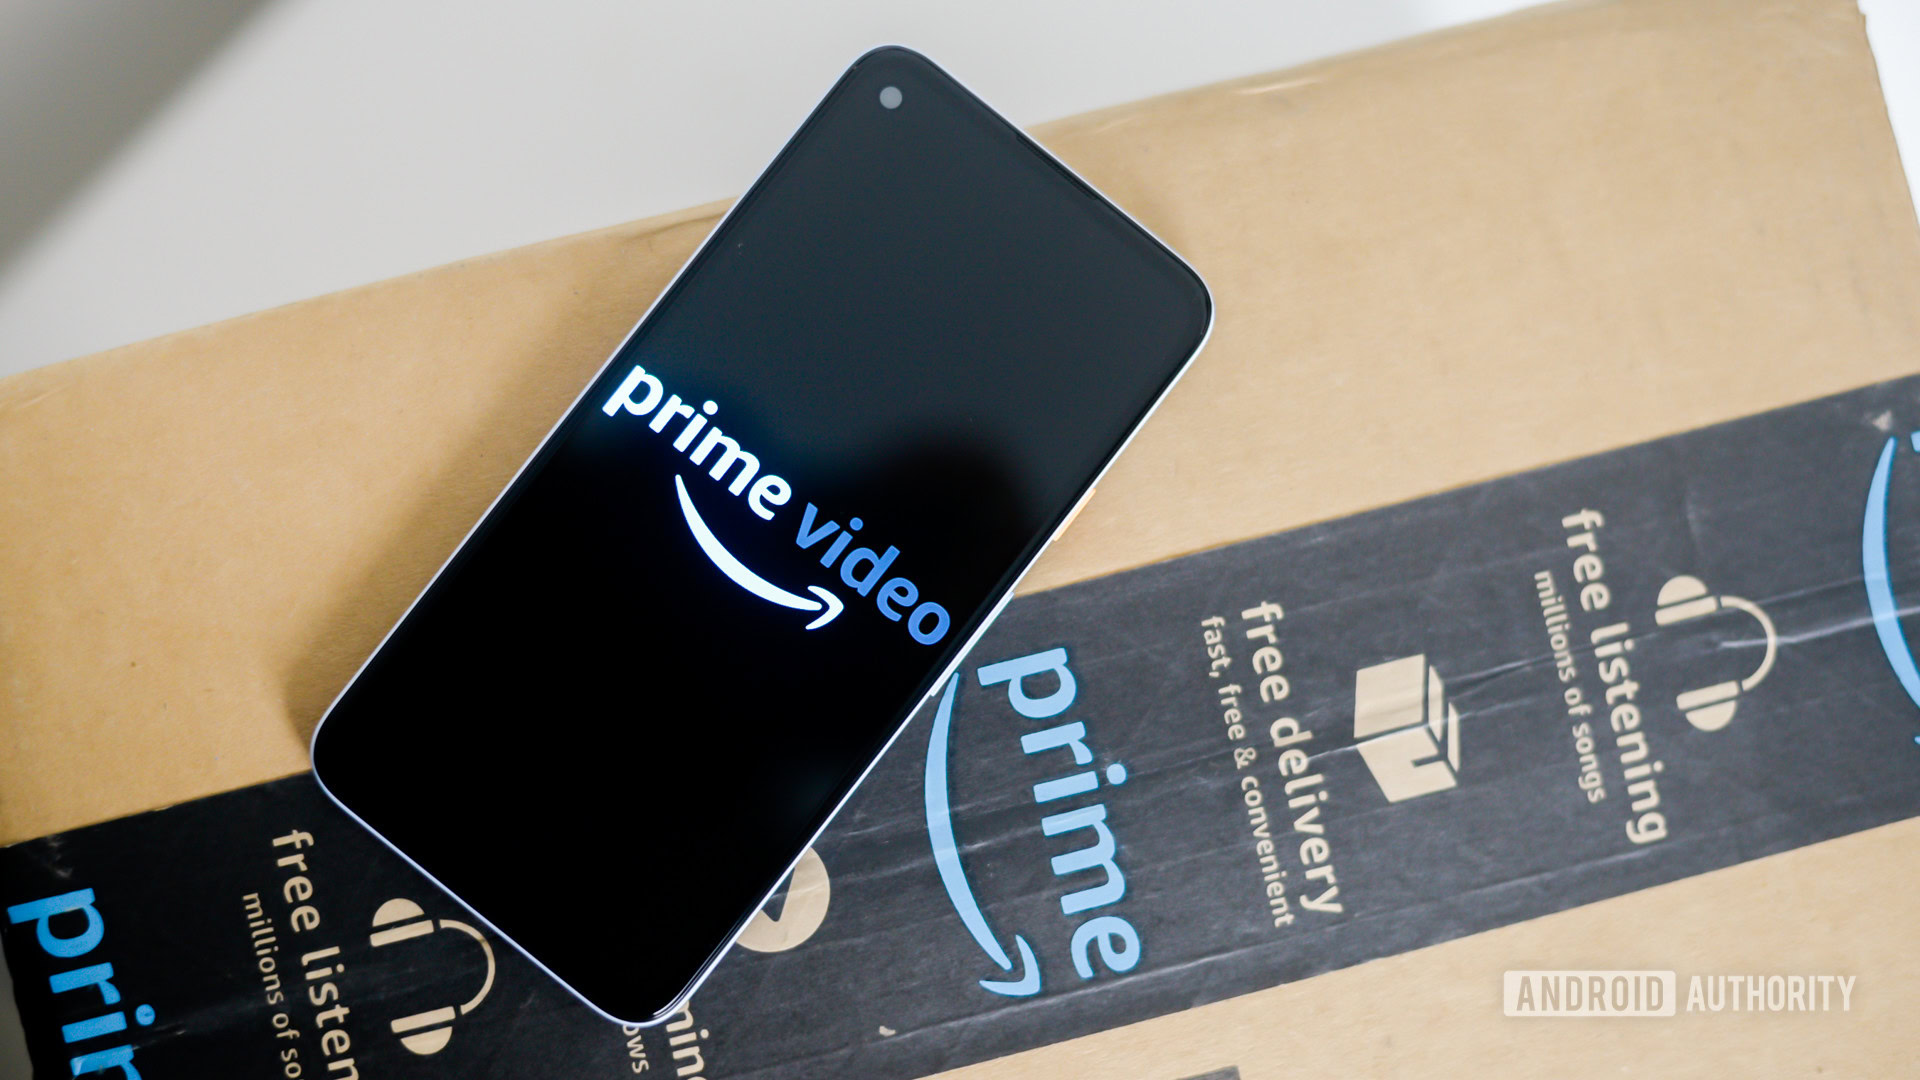 Amazon Prime Video stock image 2